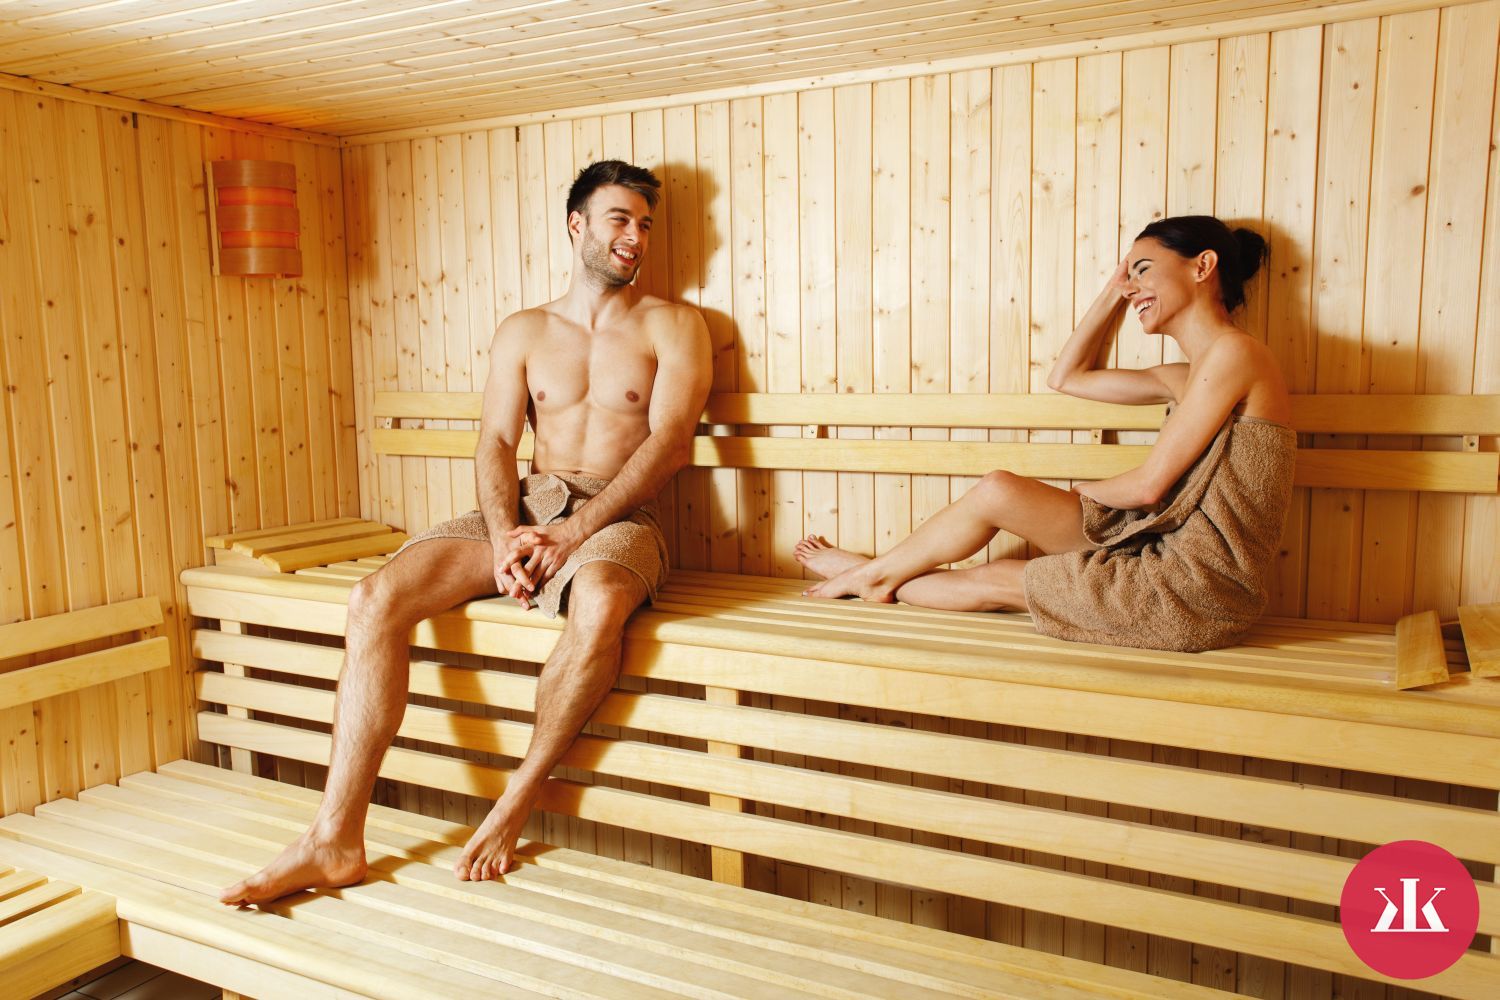 Prečo odhodiť ostych a vojsť do sauny v evinom rúchu?